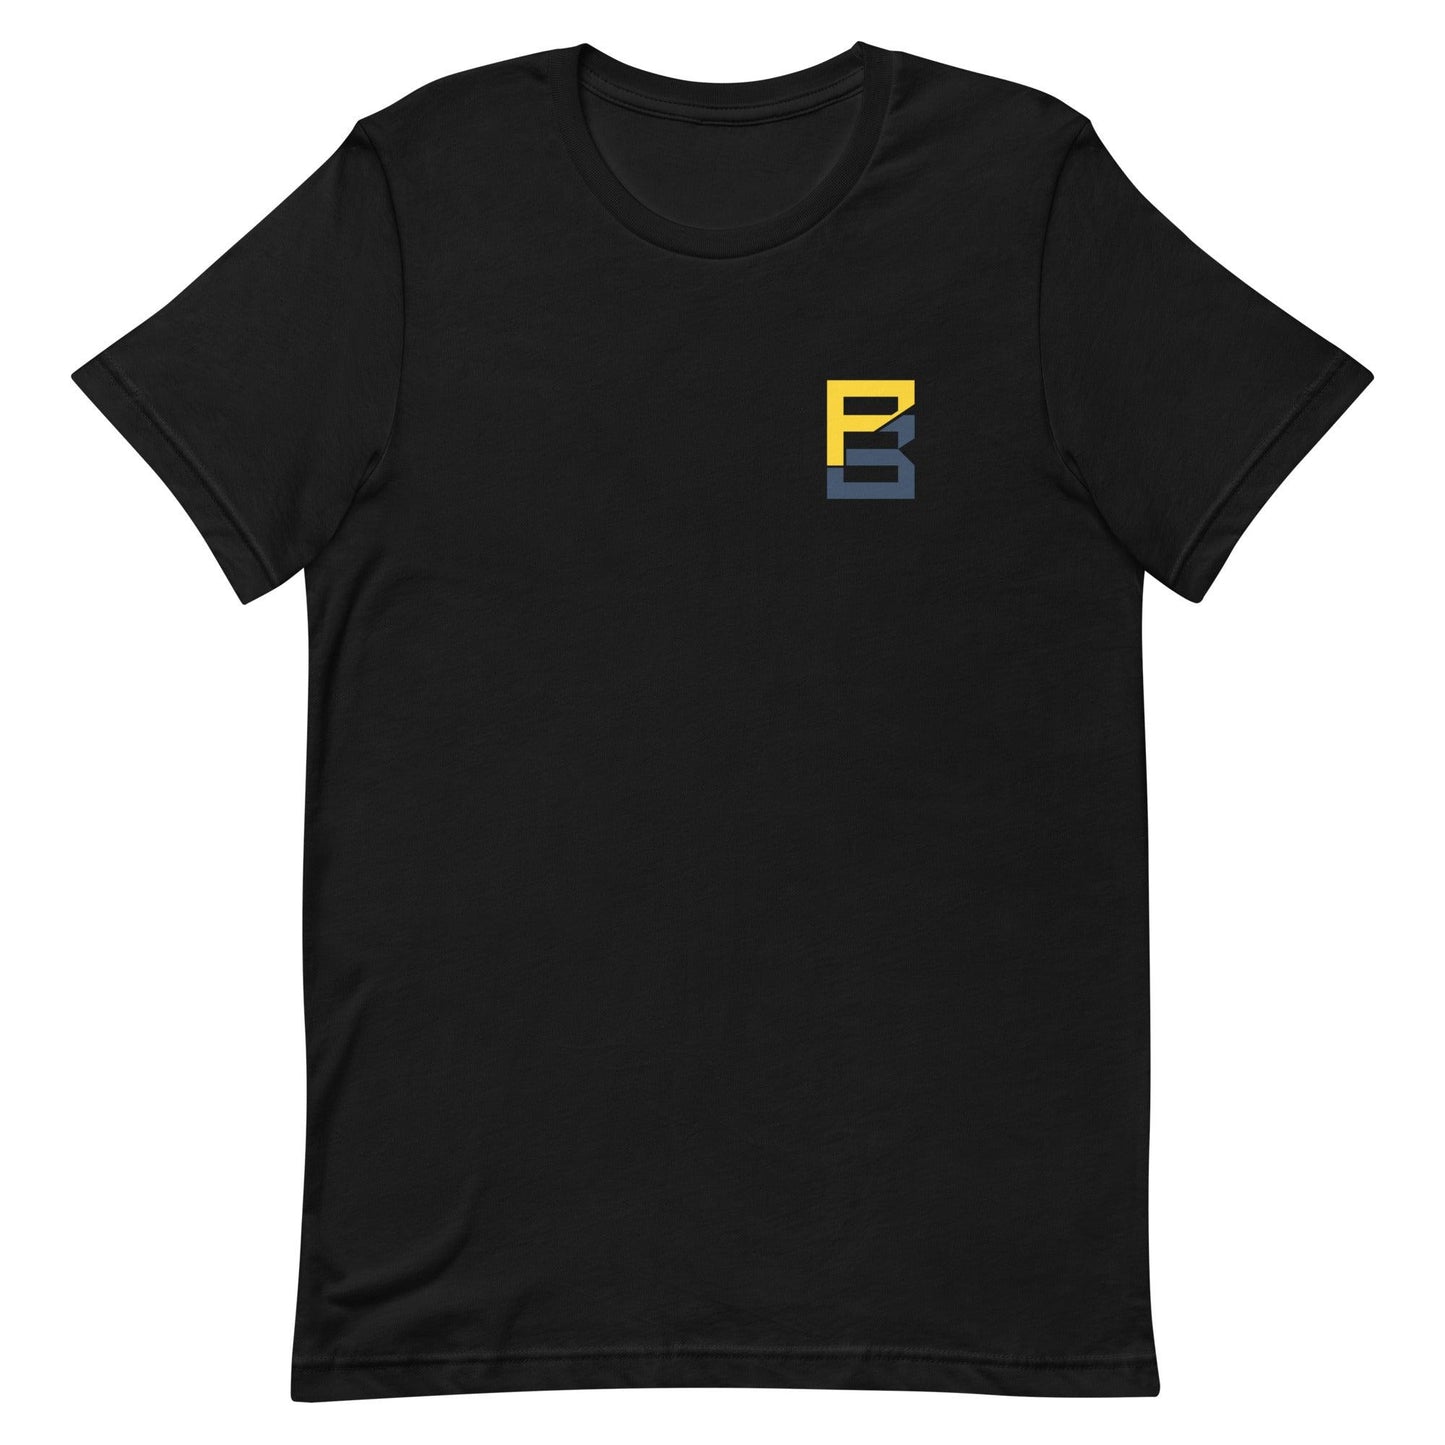 Peny Boone "Essential" t-shirt - Fan Arch